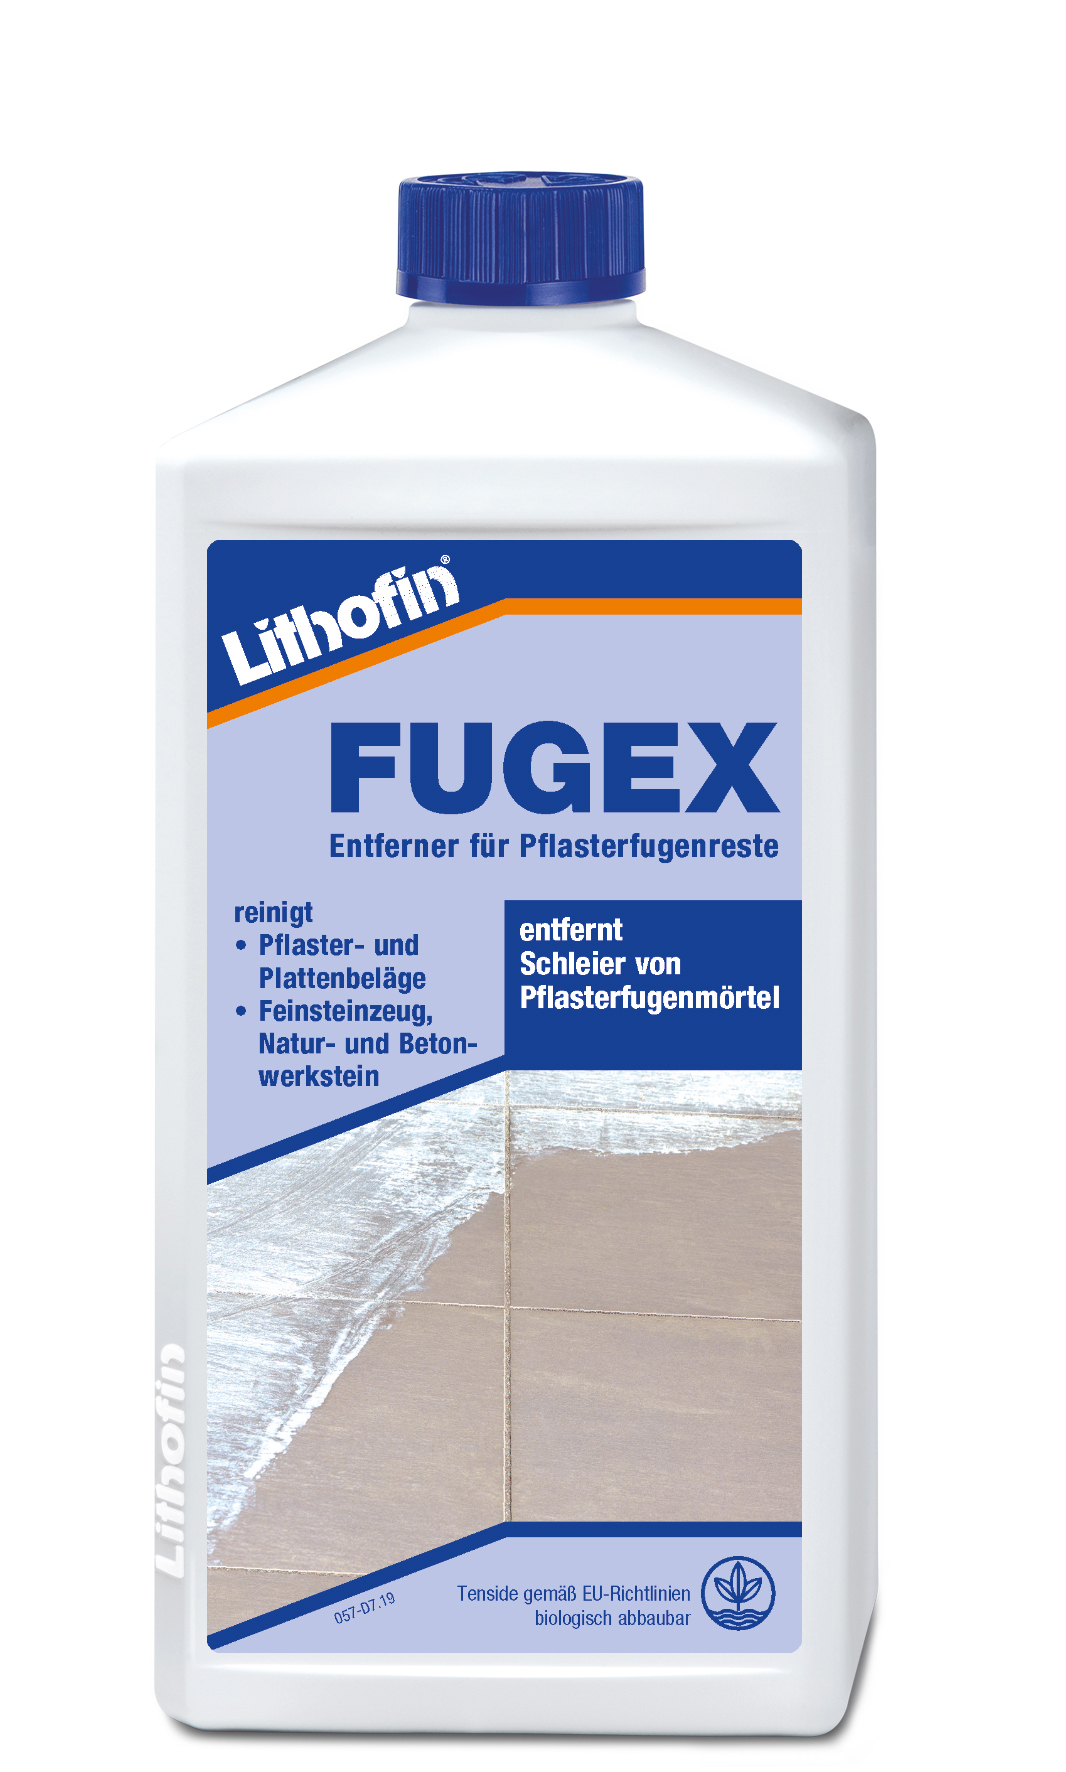 Lithofin FUGEX Pflasterfugenmörtel 1 l